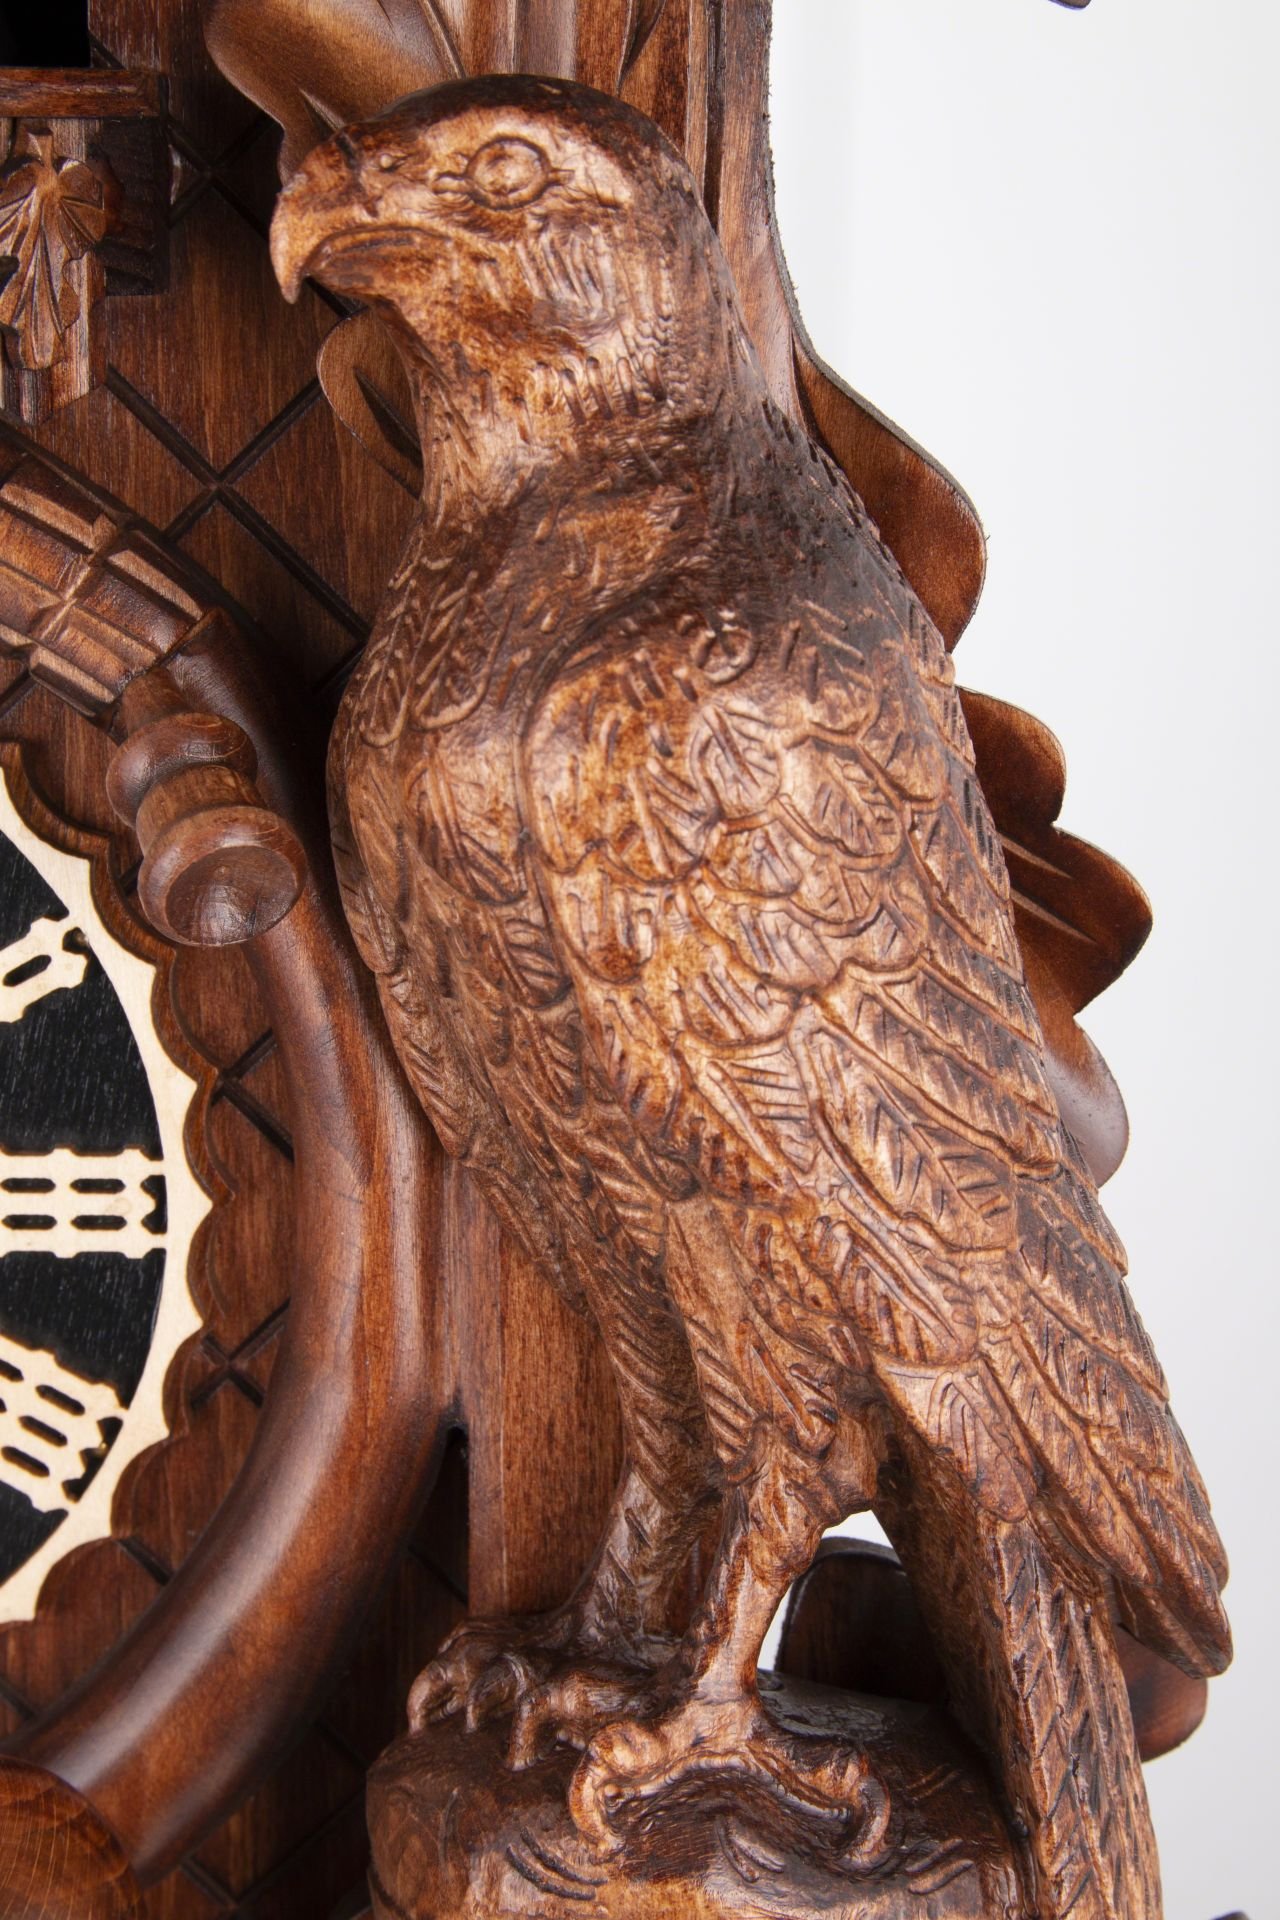 Reloj de cuco estilo “Madera tallada” movimiento mecánico de 8 días 80cm de Hönes